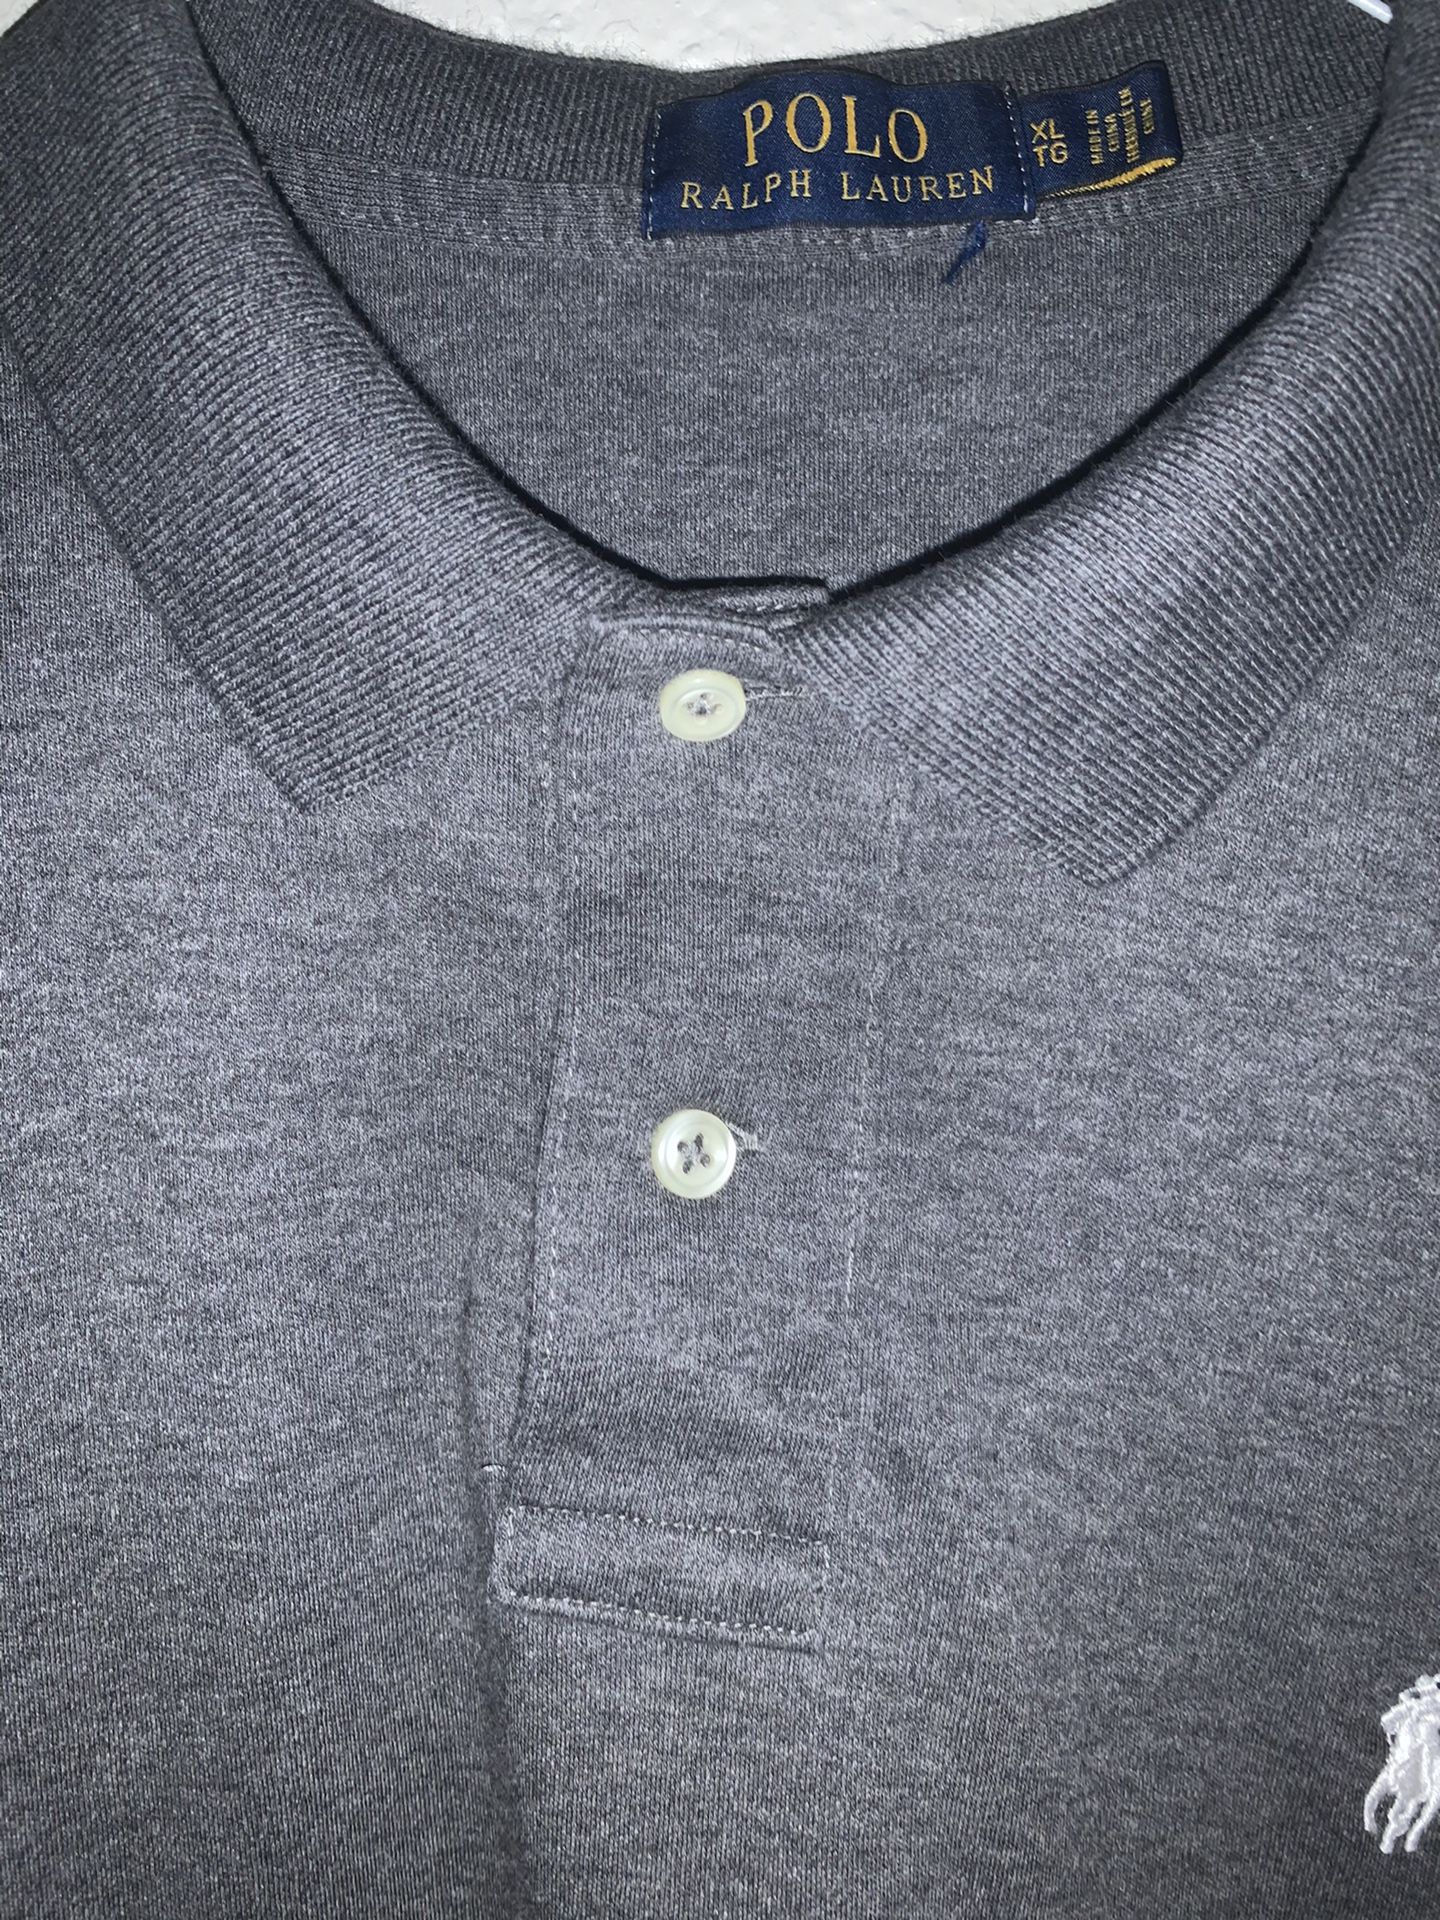 Polo Ralph Lauren grey shirt